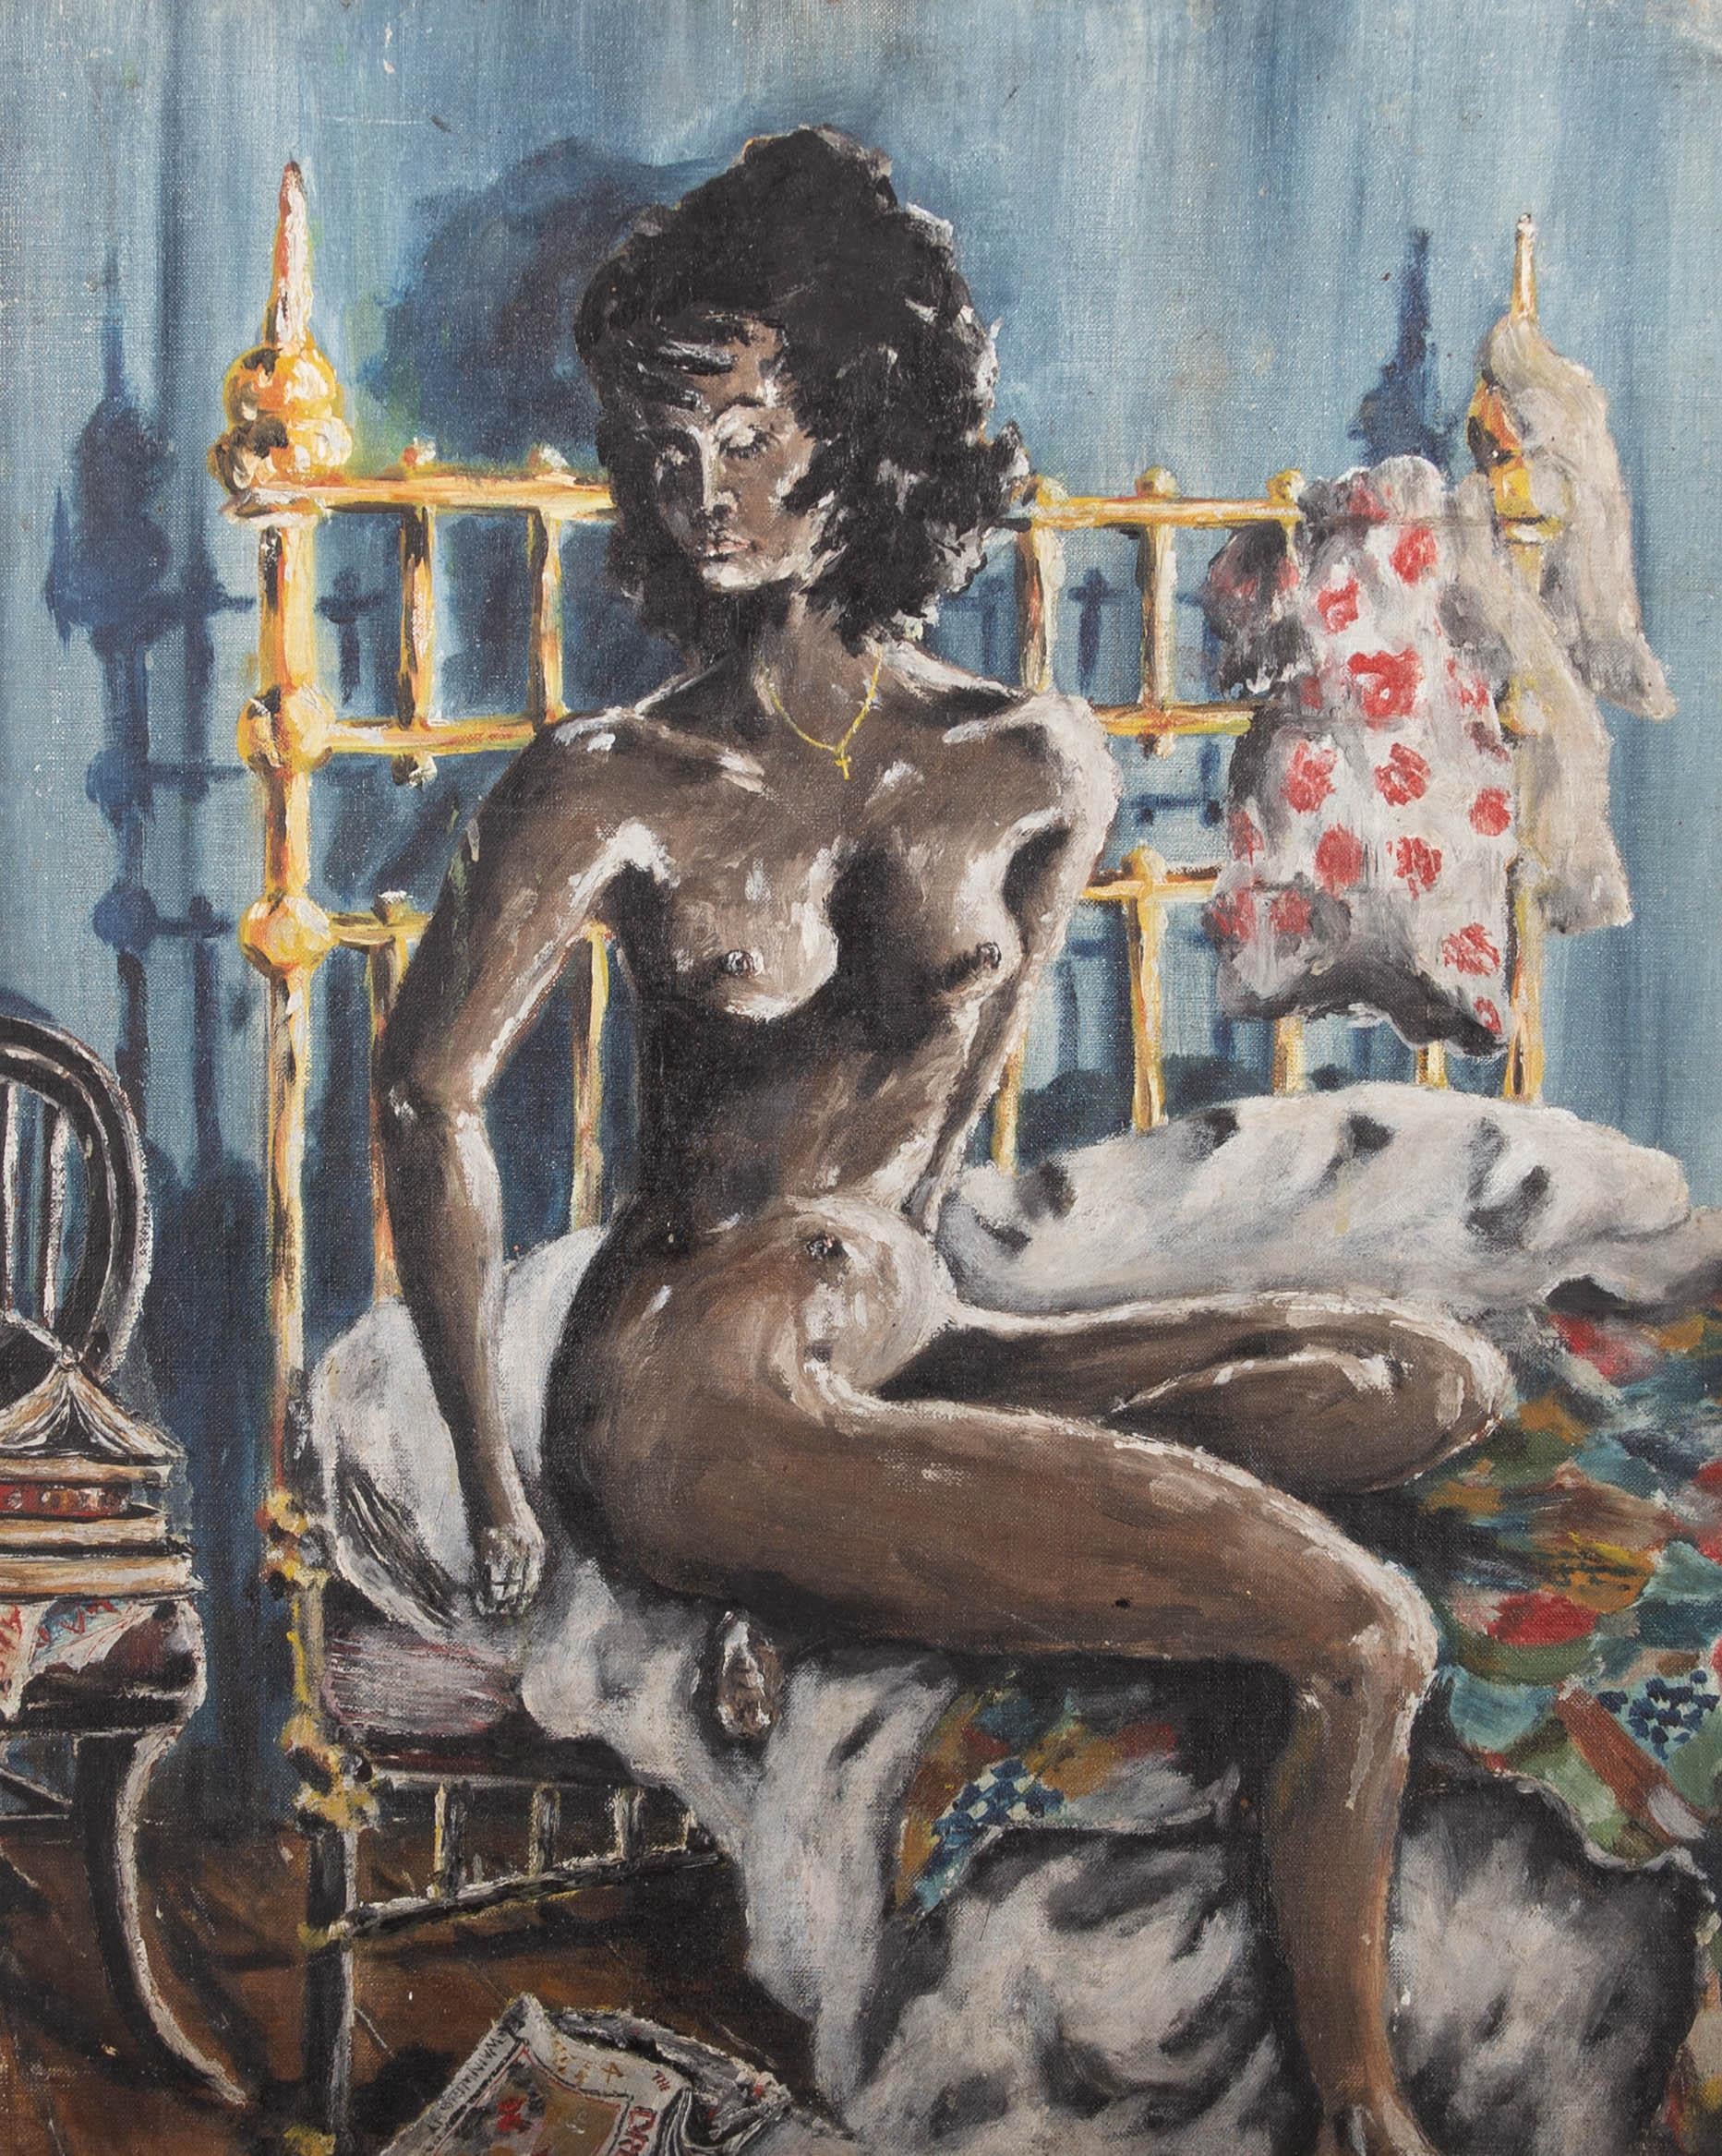 Huile du milieu du XXe siècle - Portrait d'une figure féminine nue dans une chambre - Painting de Unknown